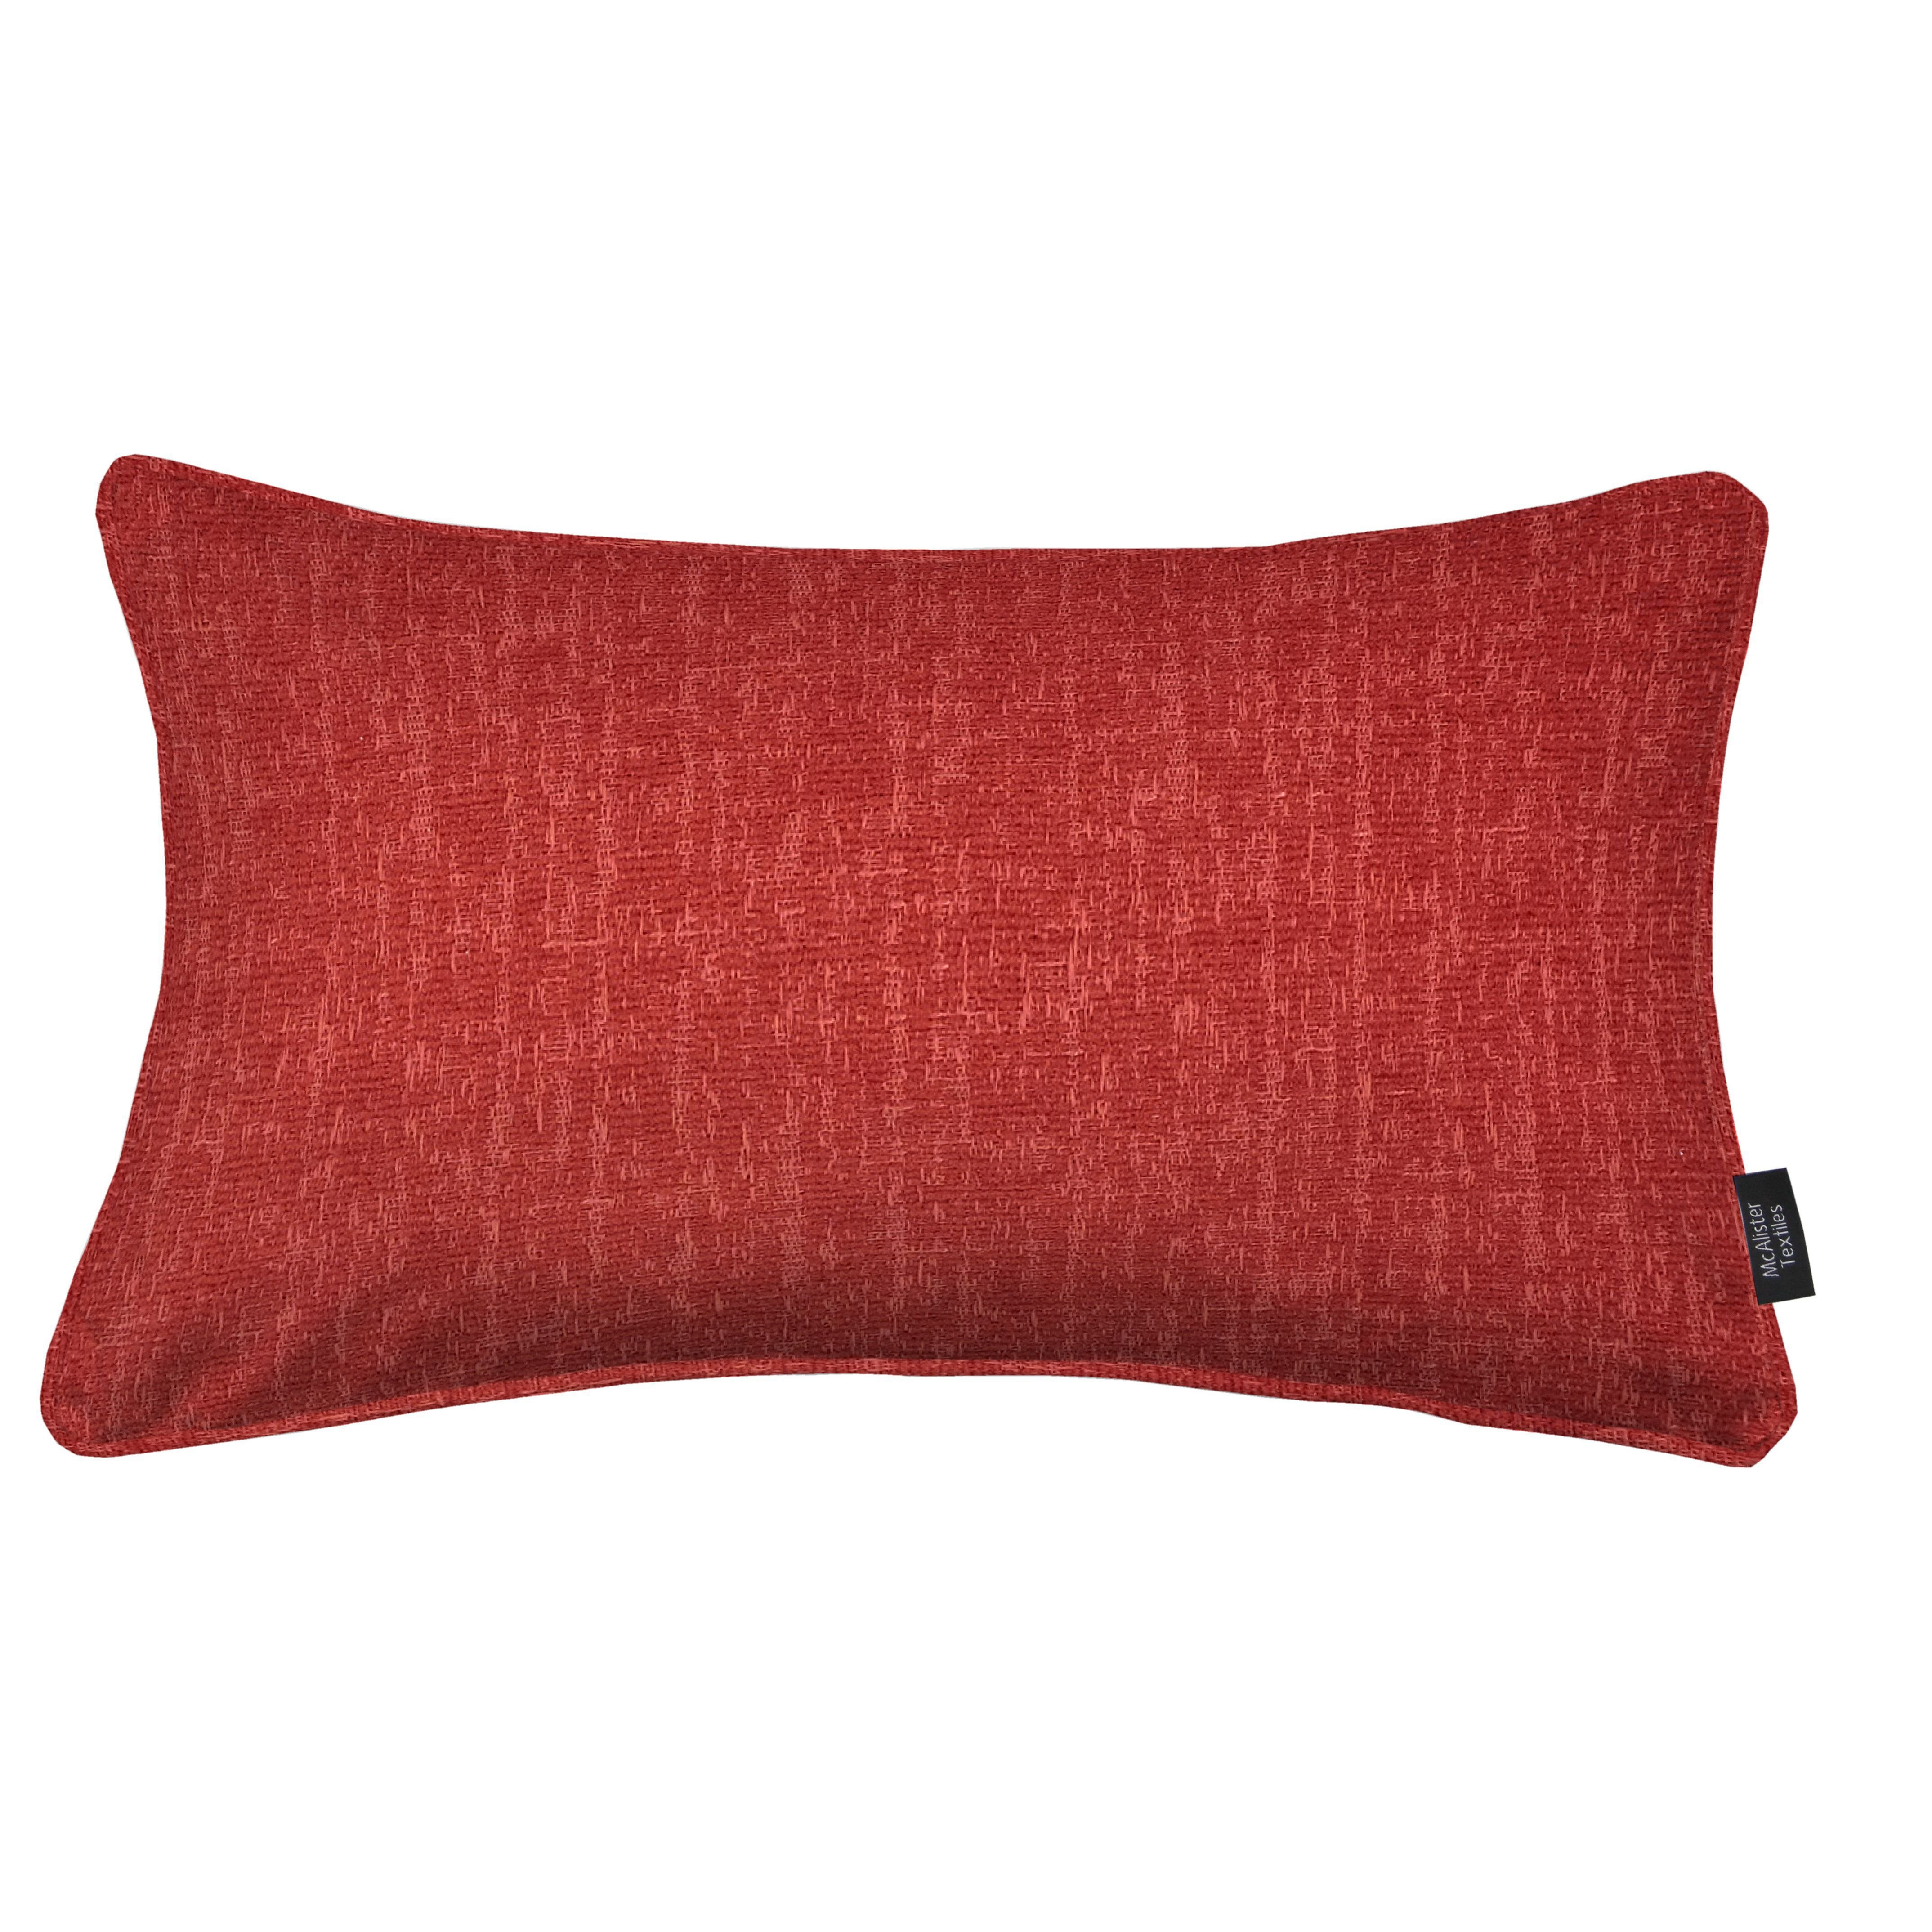 Eternity Red Chenille Pillow, Polyester Filler / 50cm x 30cm